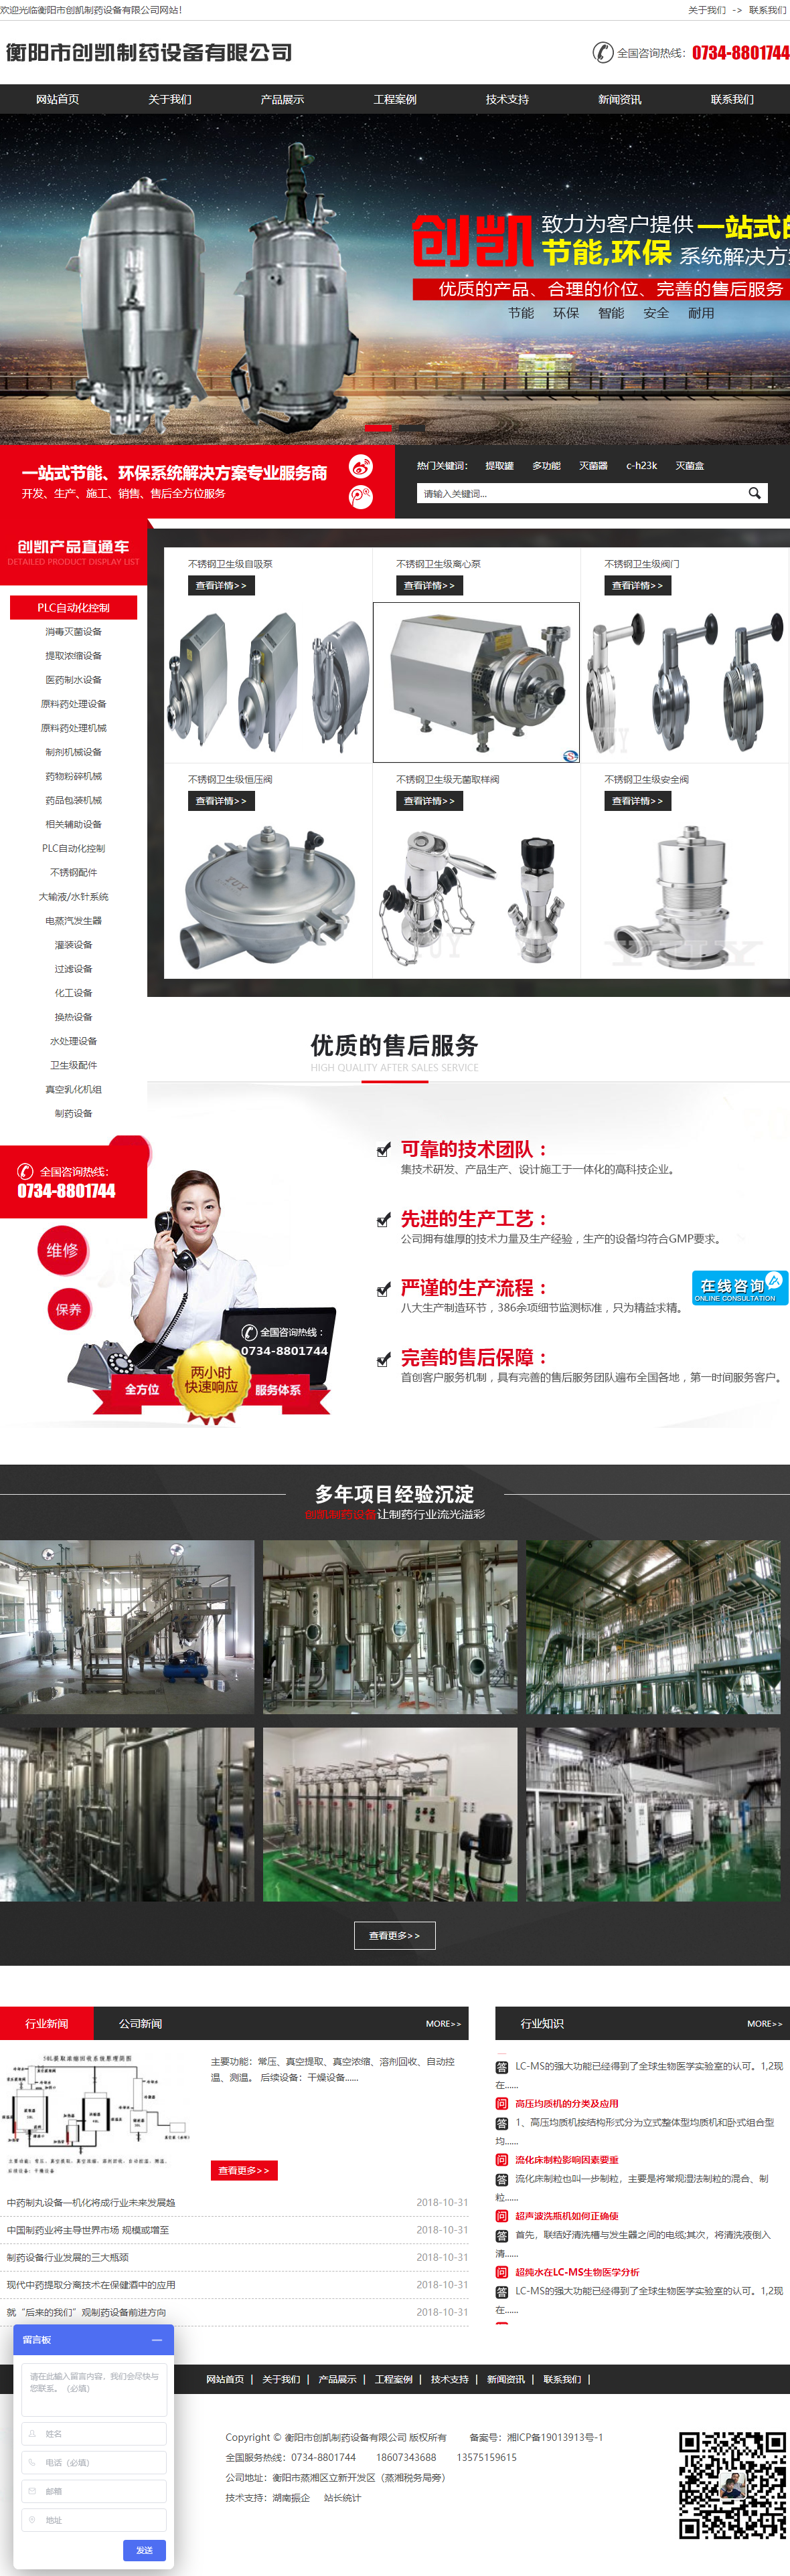 衡阳市创凯制药设备有限公司网站案例